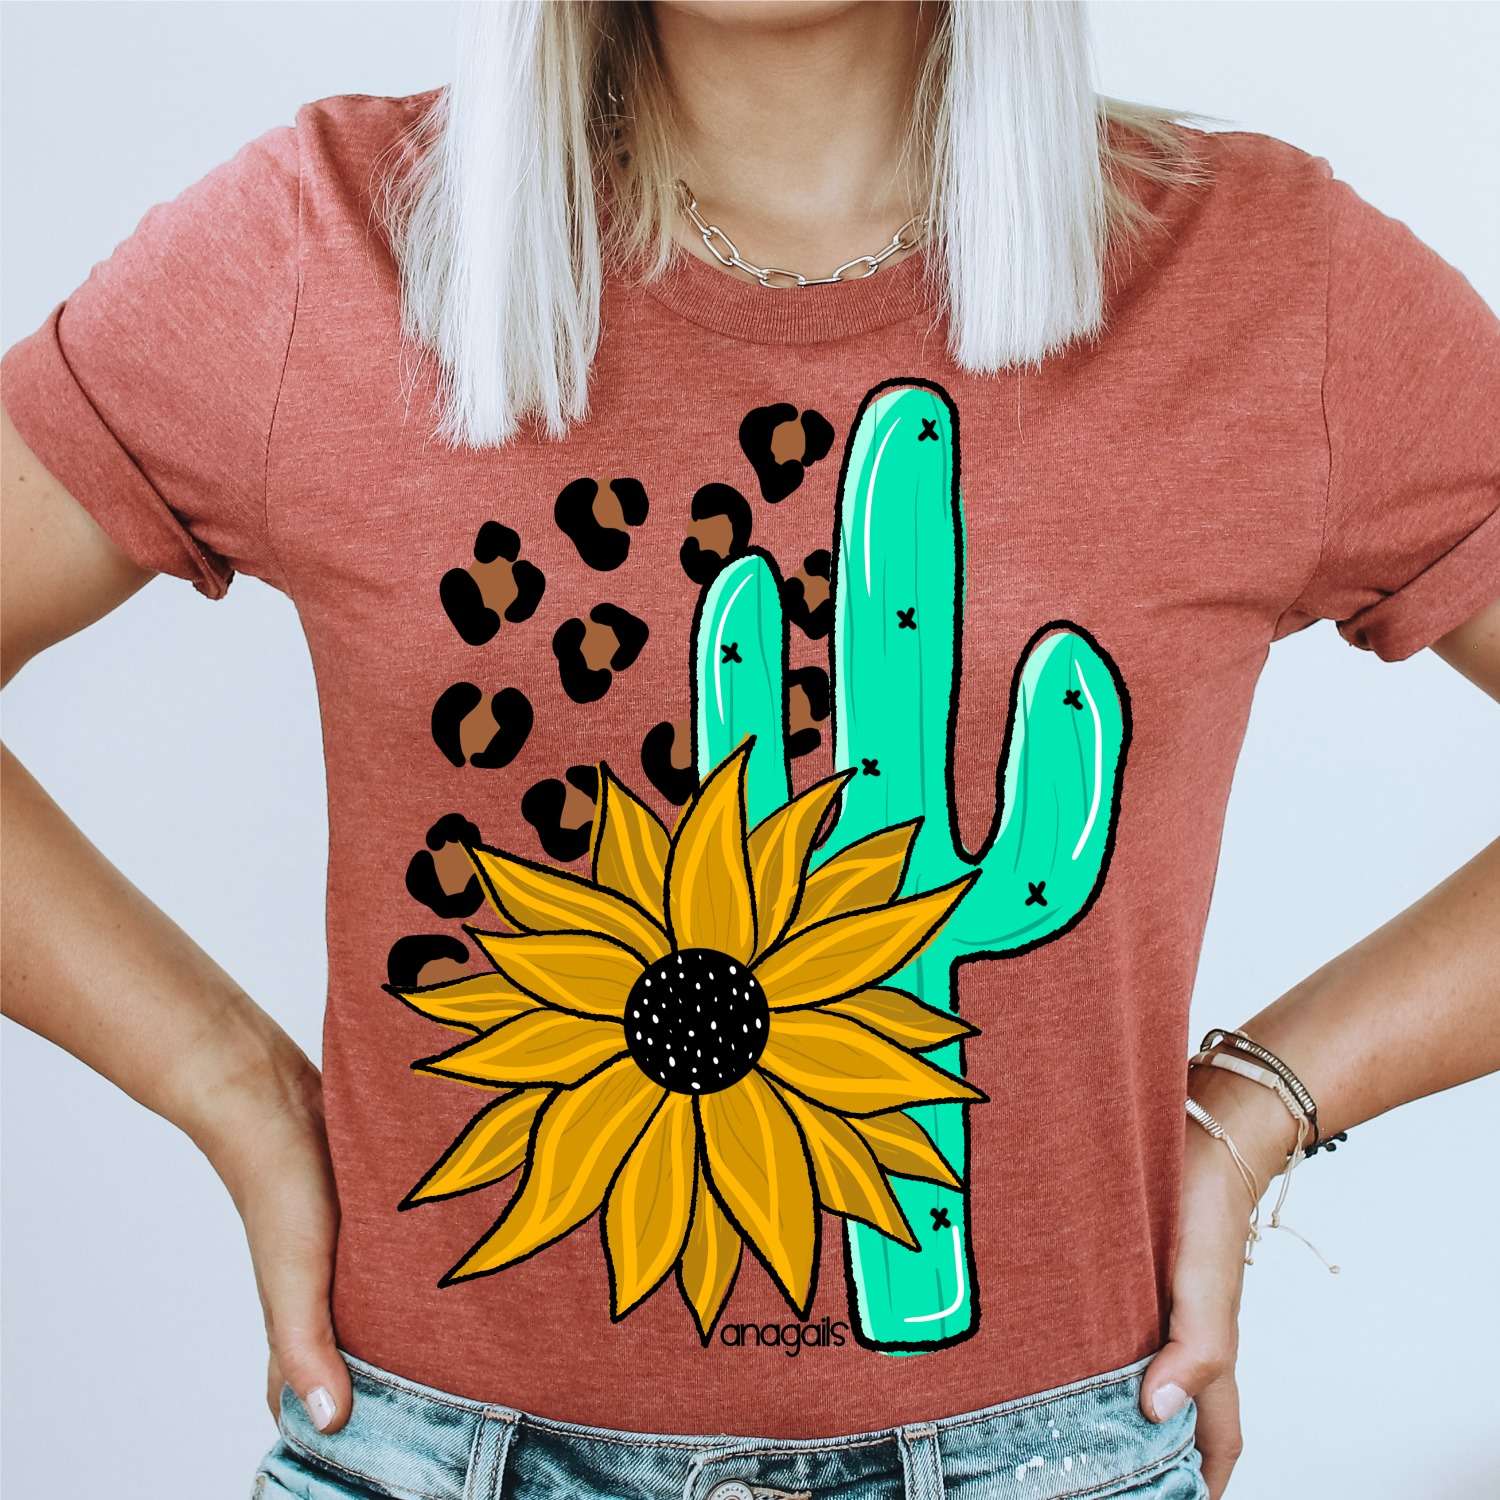 Sunflower Castus - Anagals T shirt for girl